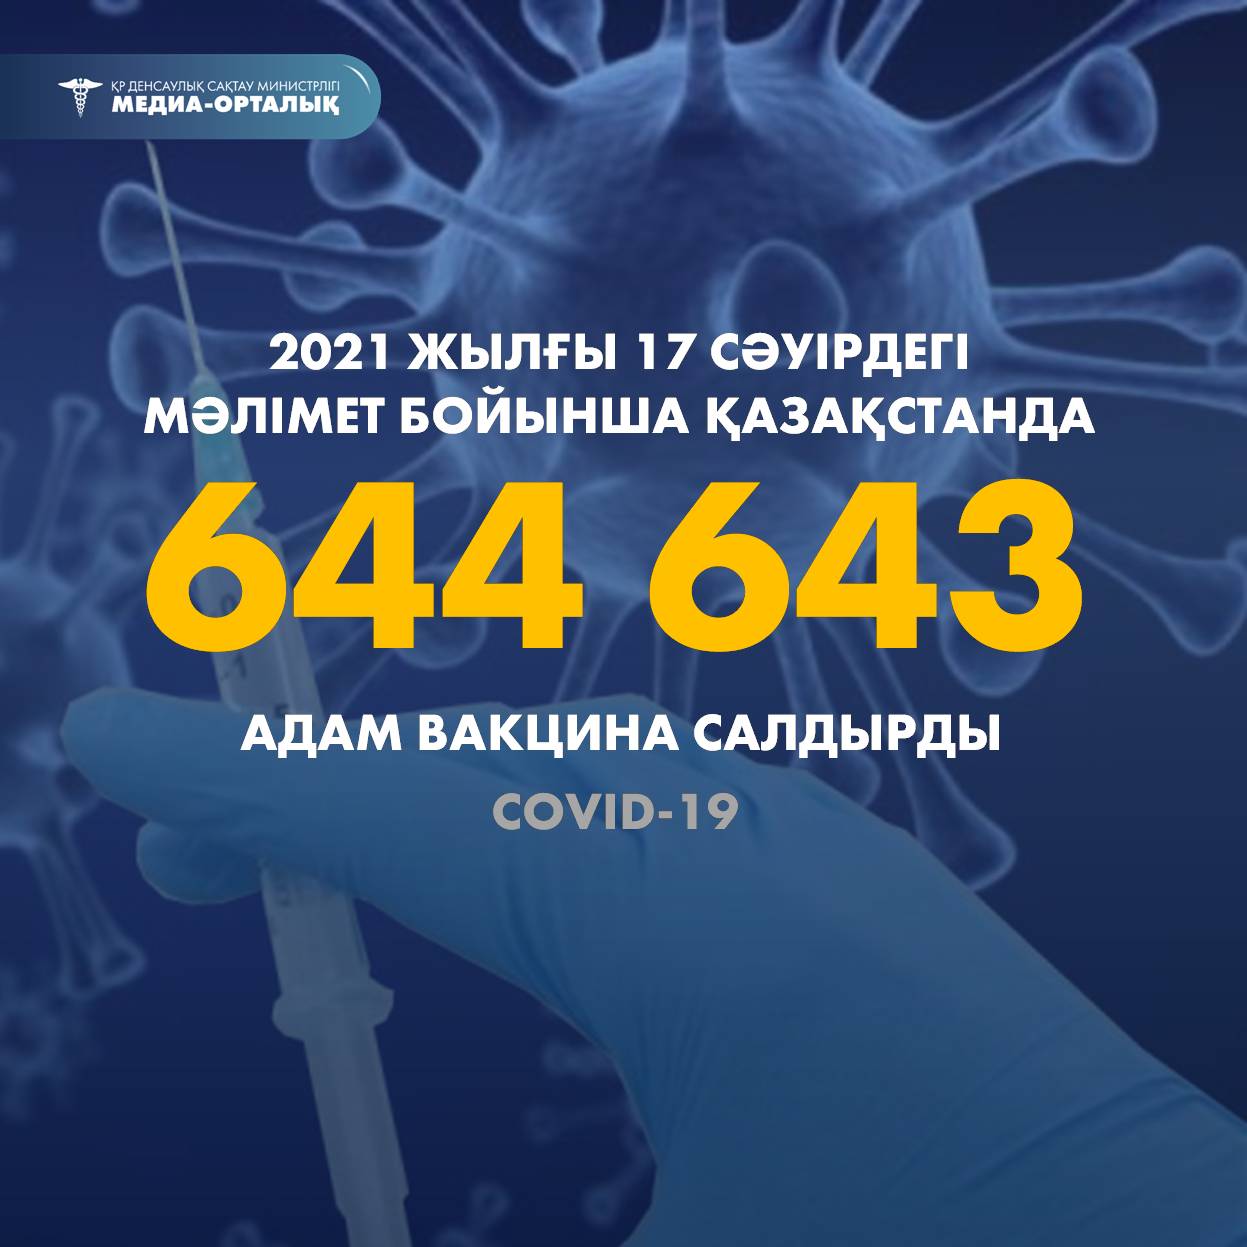 2021 жылғы 17 сәуірдегі мәлімет бойынша Қазақстанда 644 643 адам вакцина салдырды